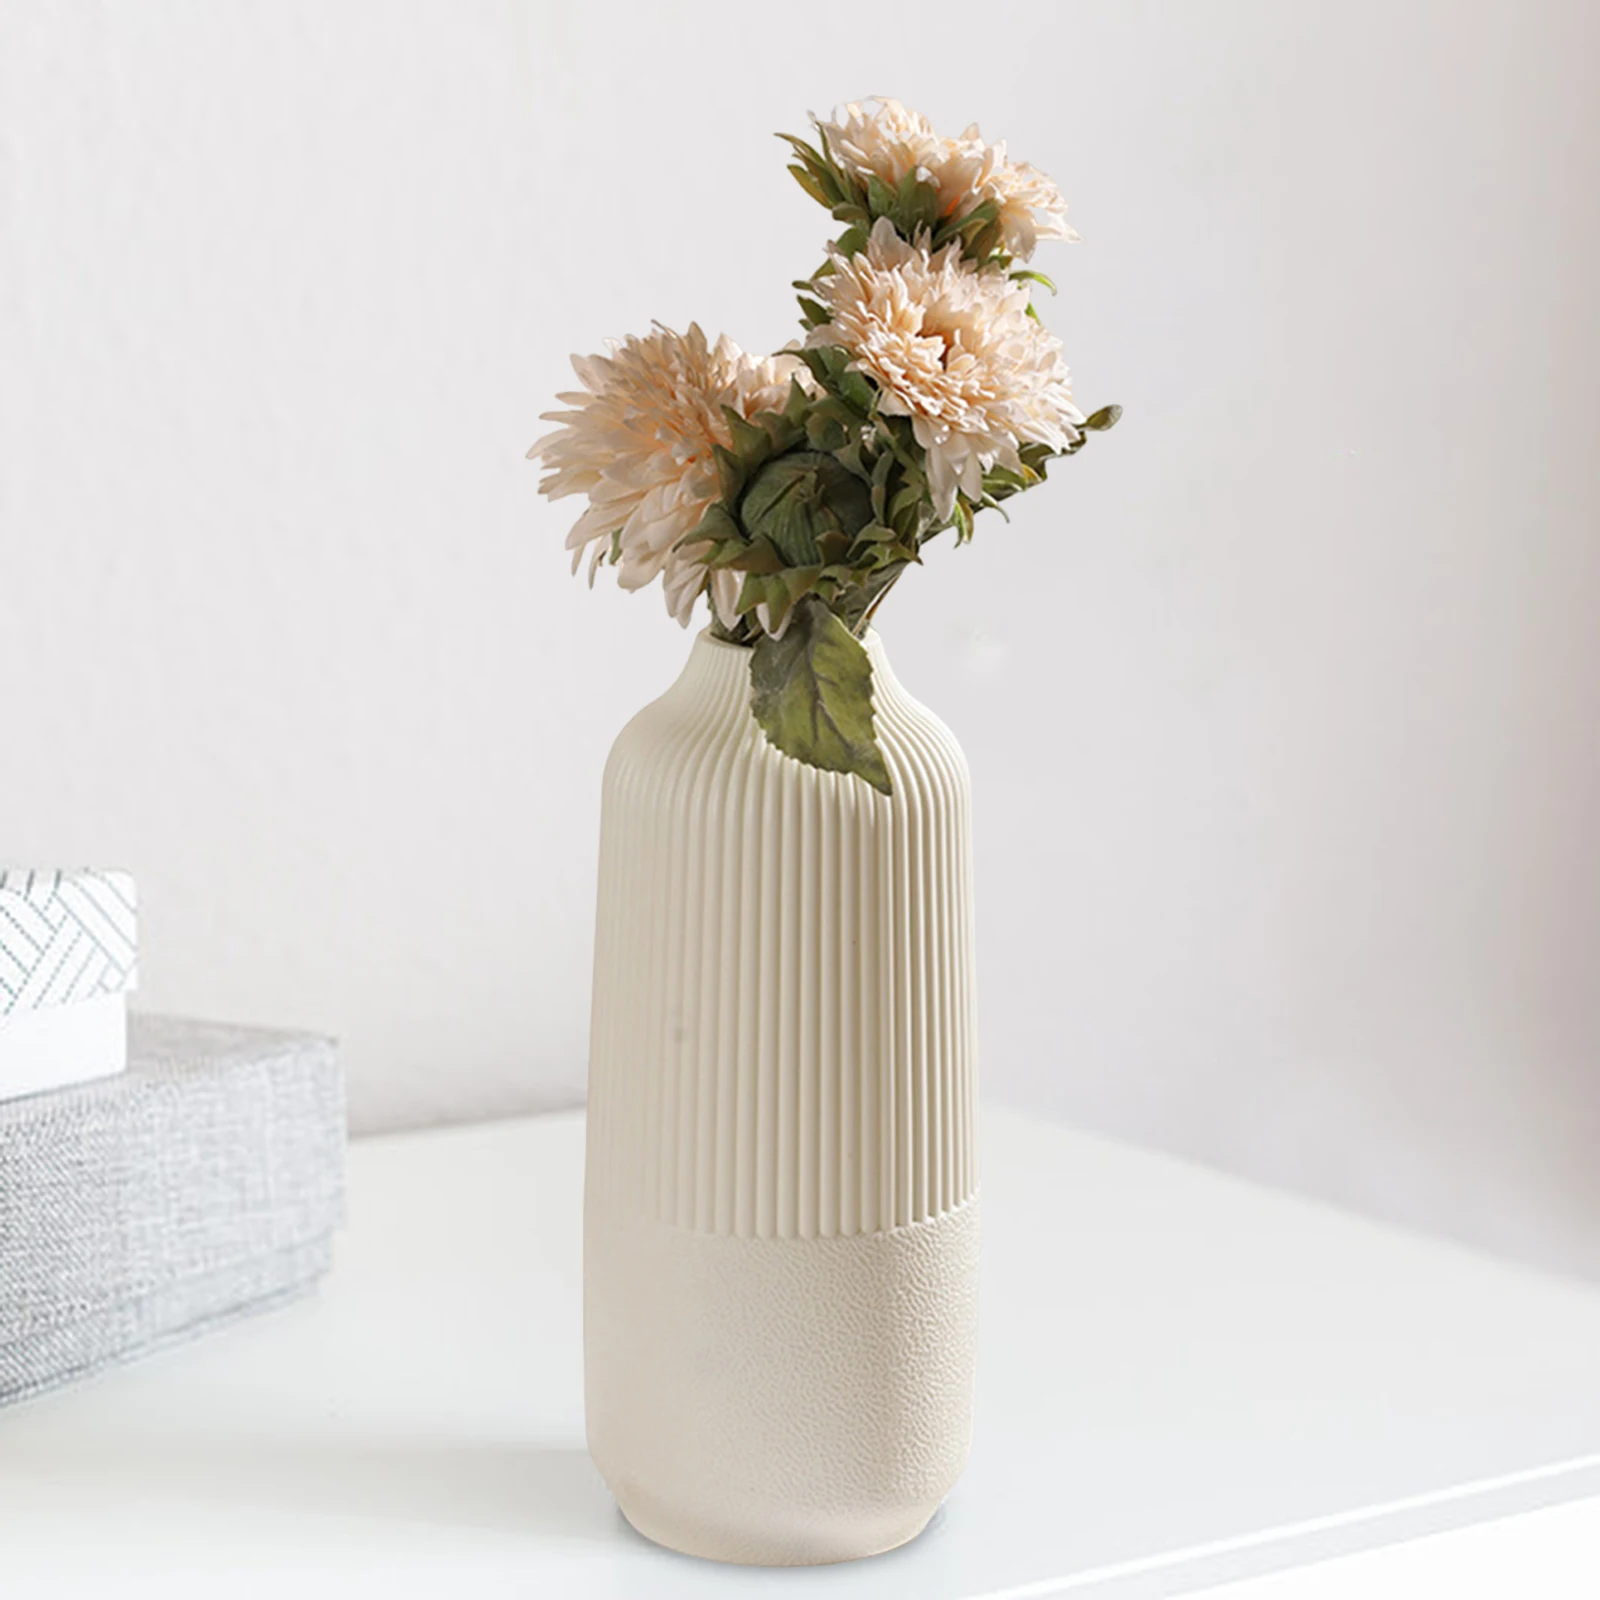 Modern Flower Vase Flower Pot Basket Nordic Home Decoration Vase Minimalist Vase for Home Table Office Bedroom Decors